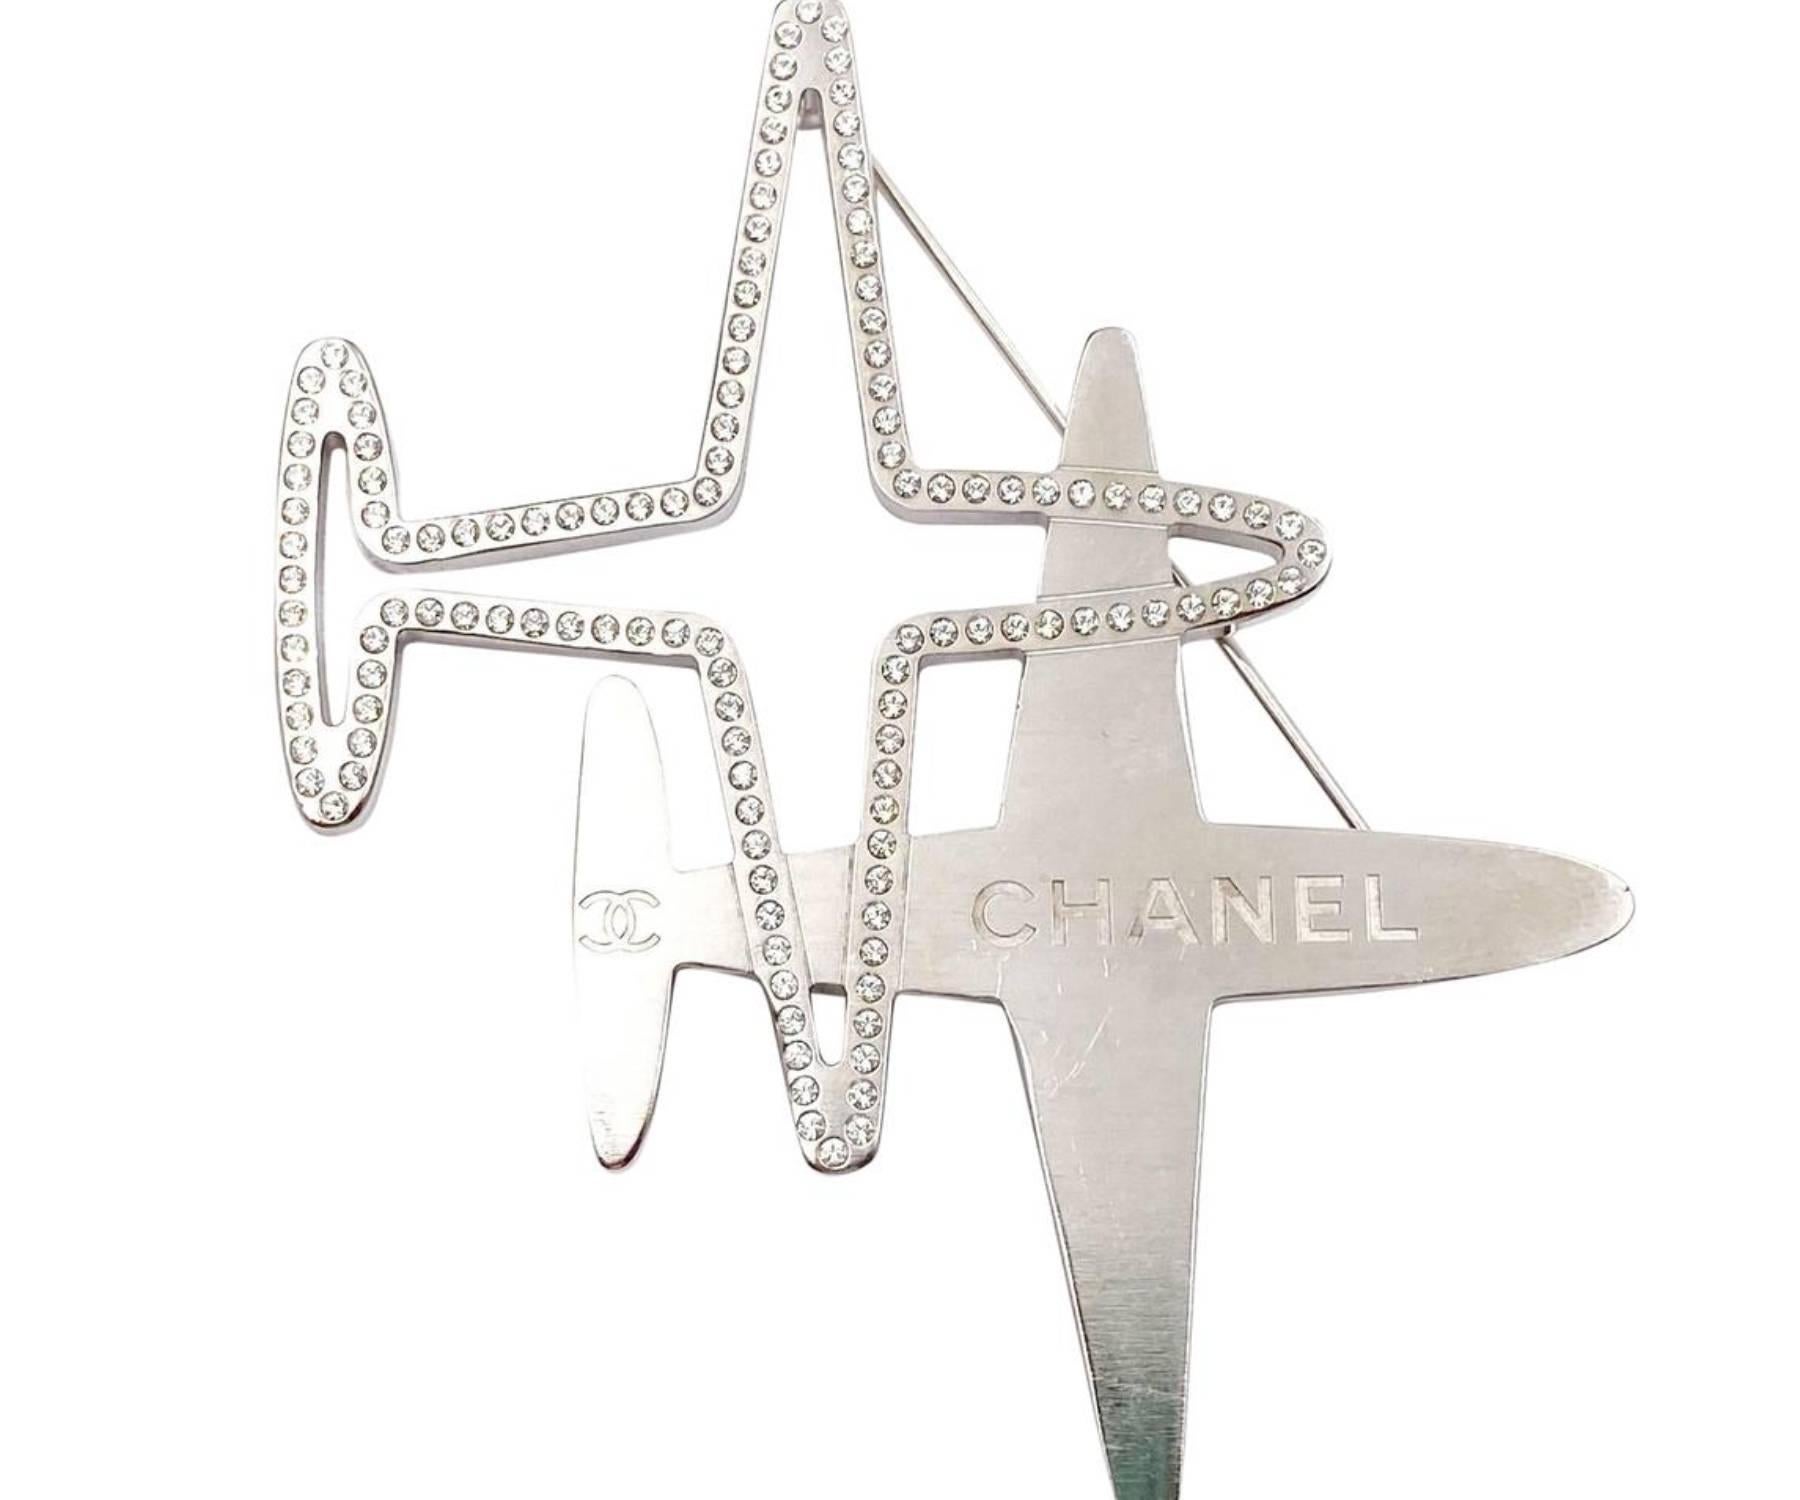 Chanel Silber Doppel Plane Kristall Große Brosche

*Markiert 16
*Hergestellt in Frankreich
*Kommt mit dem Originalkarton

-Sie ist ungefähr 3,25